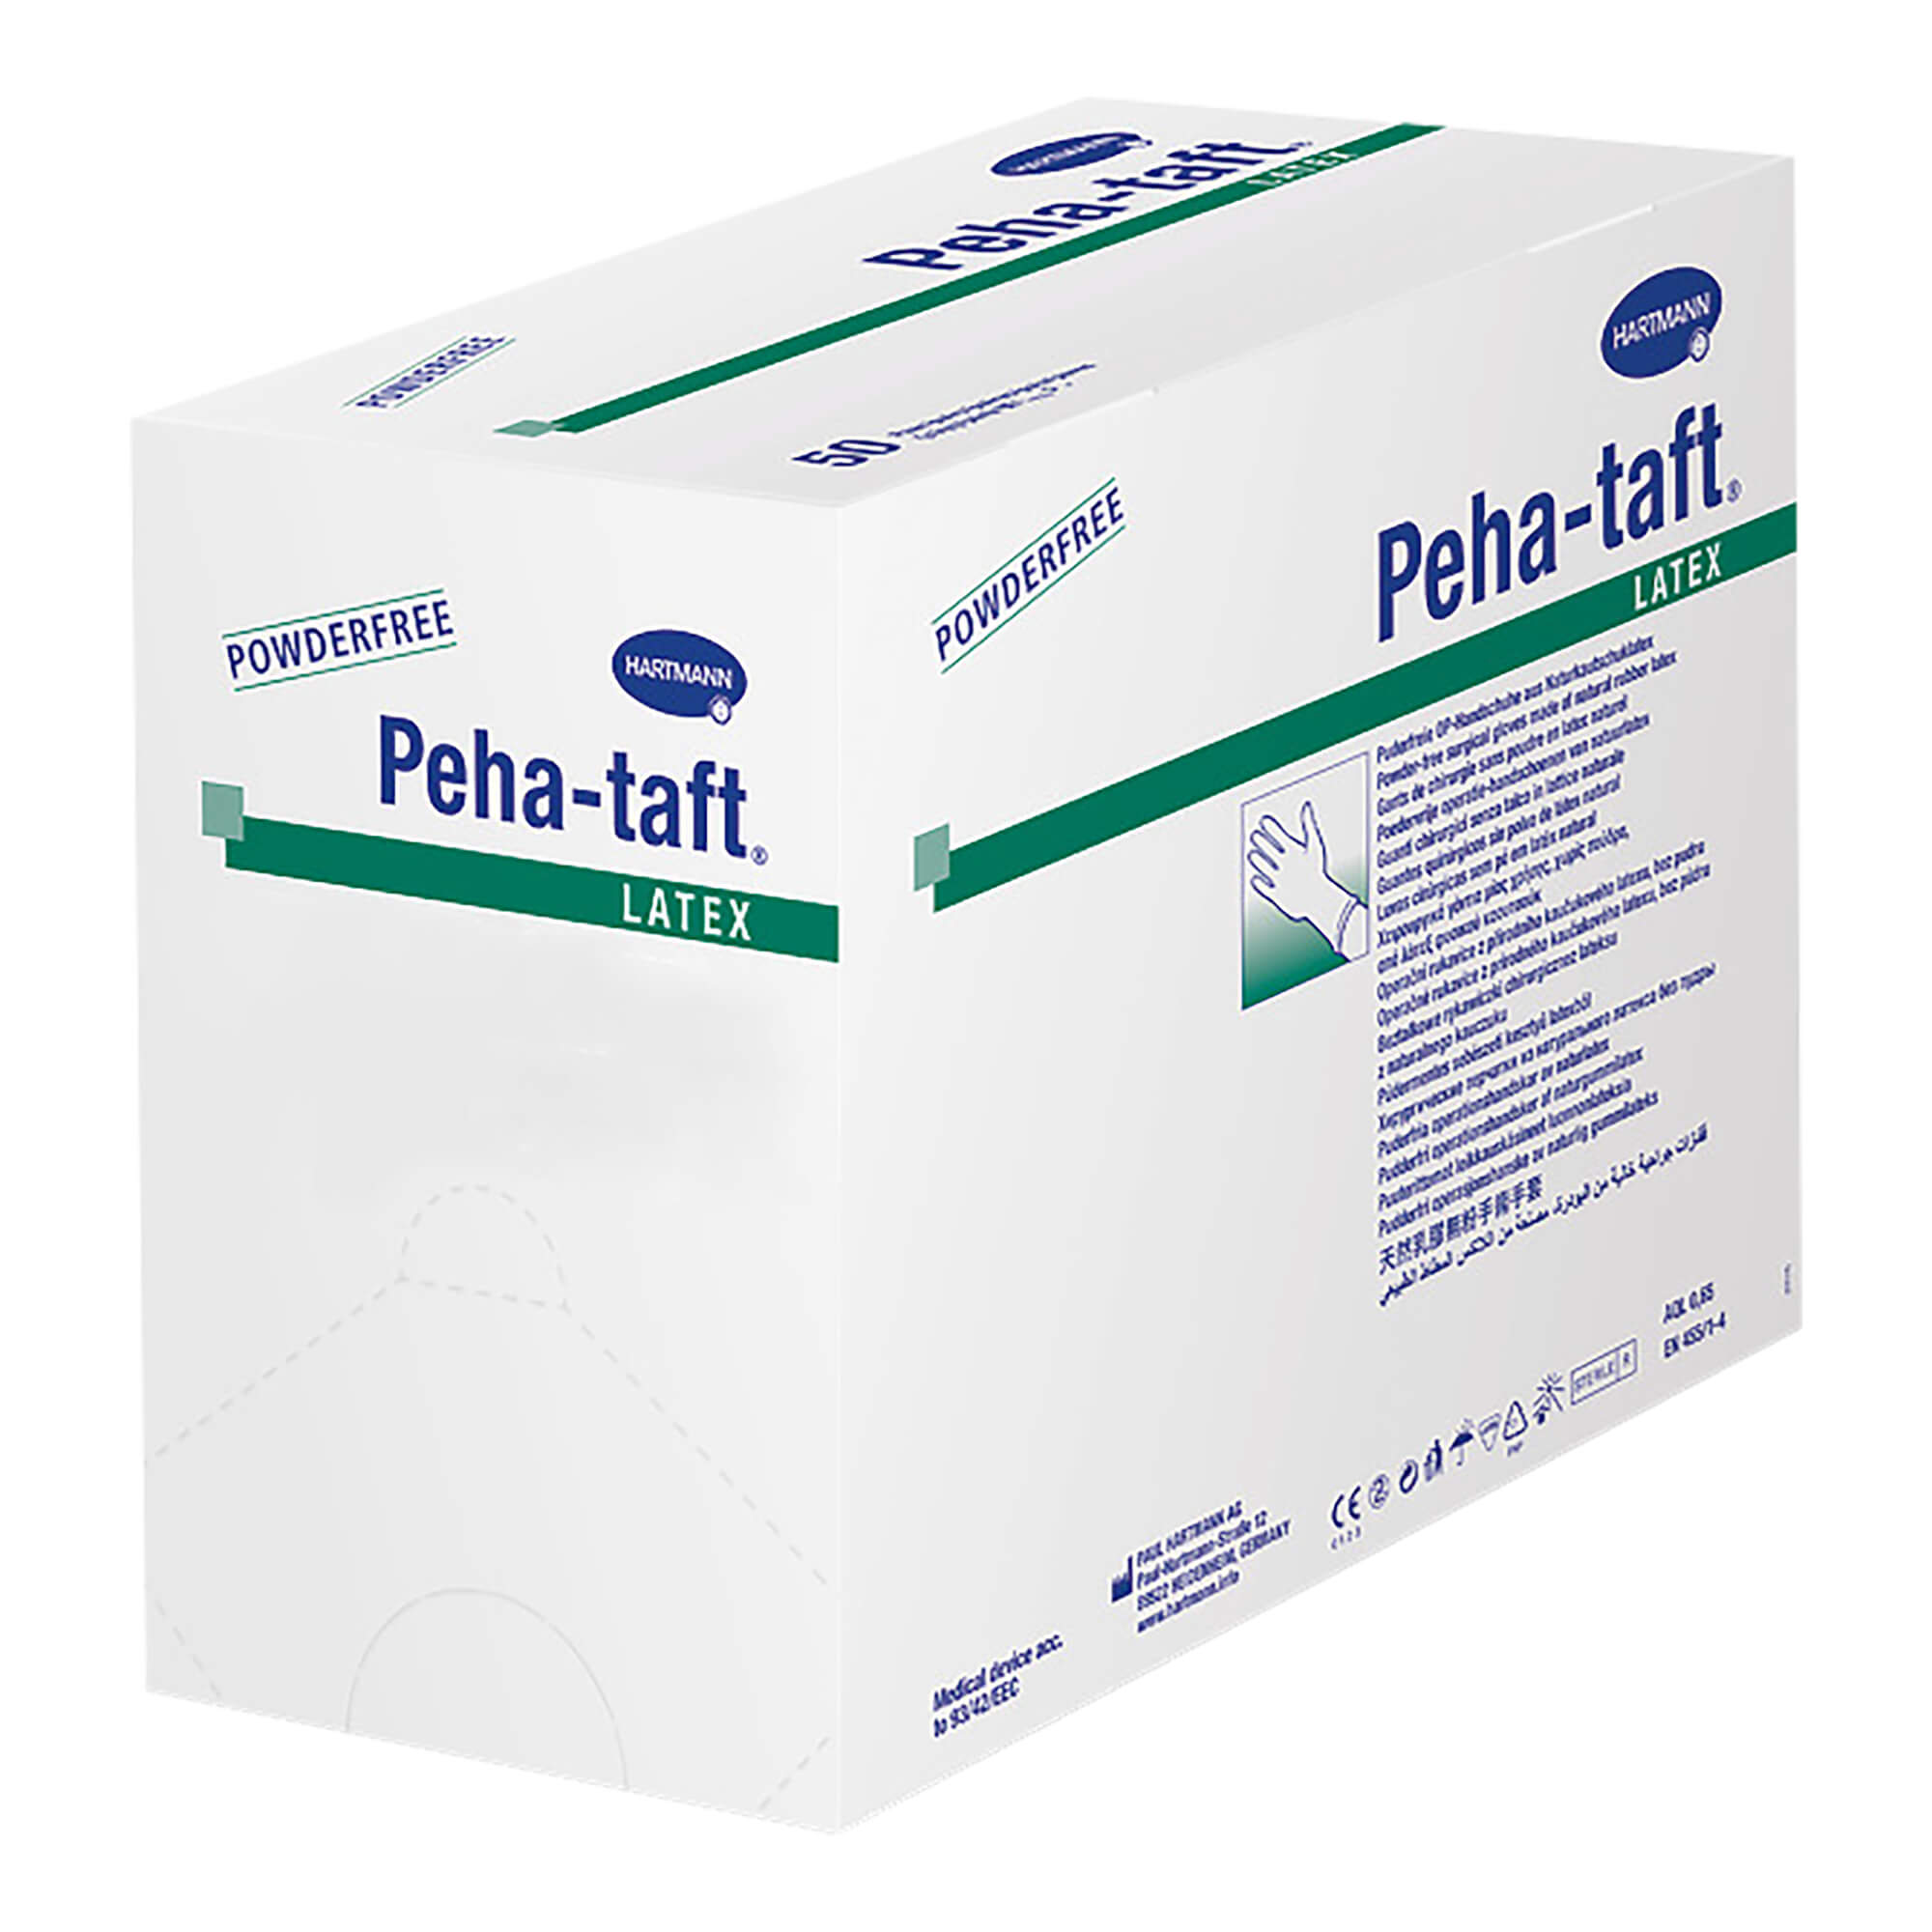 Peha-taft latex ist ein Medizinprodukt nach EN 455 und Persönliche Schutzausrüstung nach EN 374.